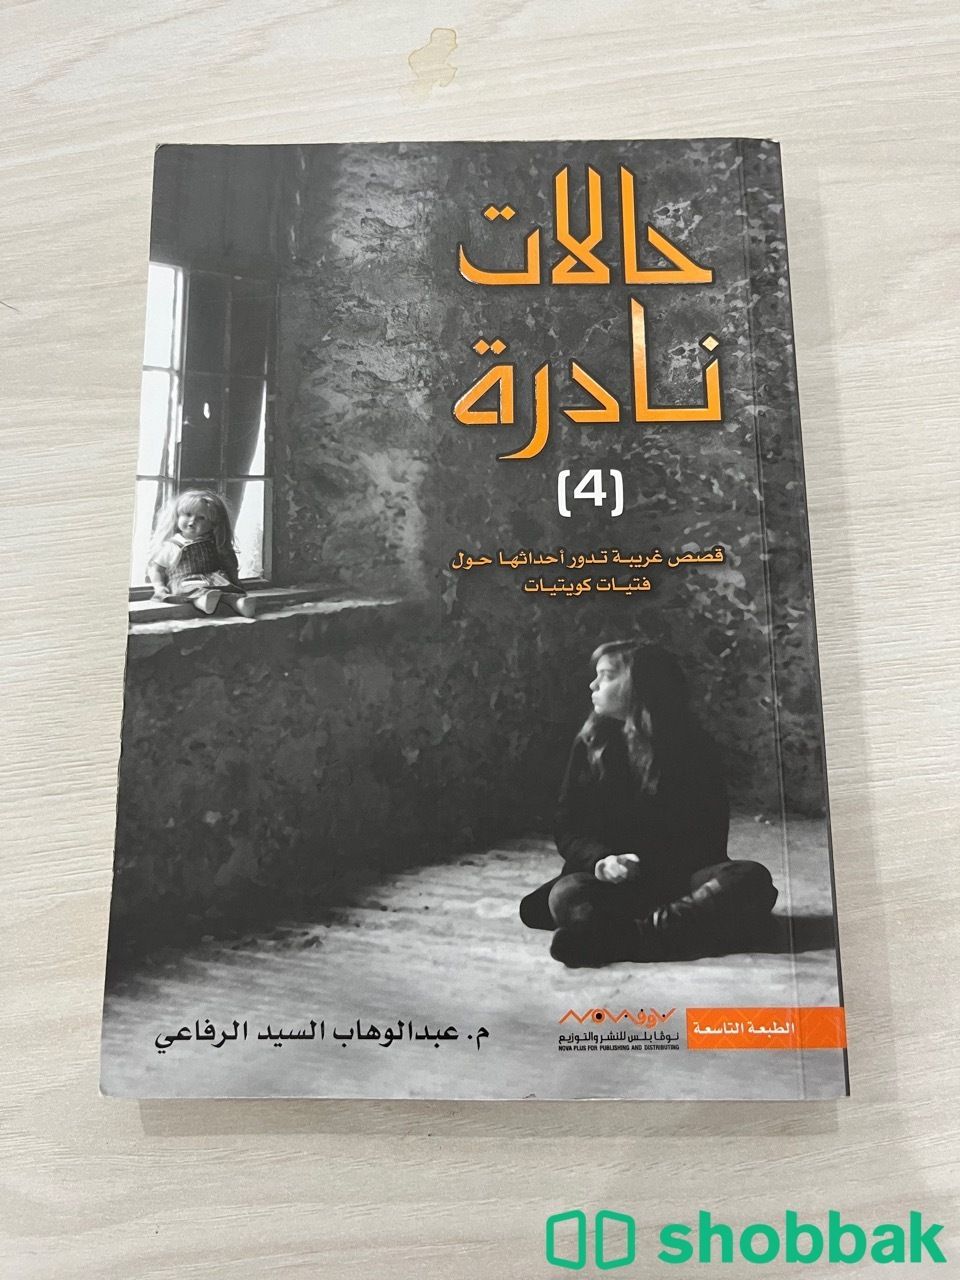 كتب انجليزية و عربية Shobbak Saudi Arabia